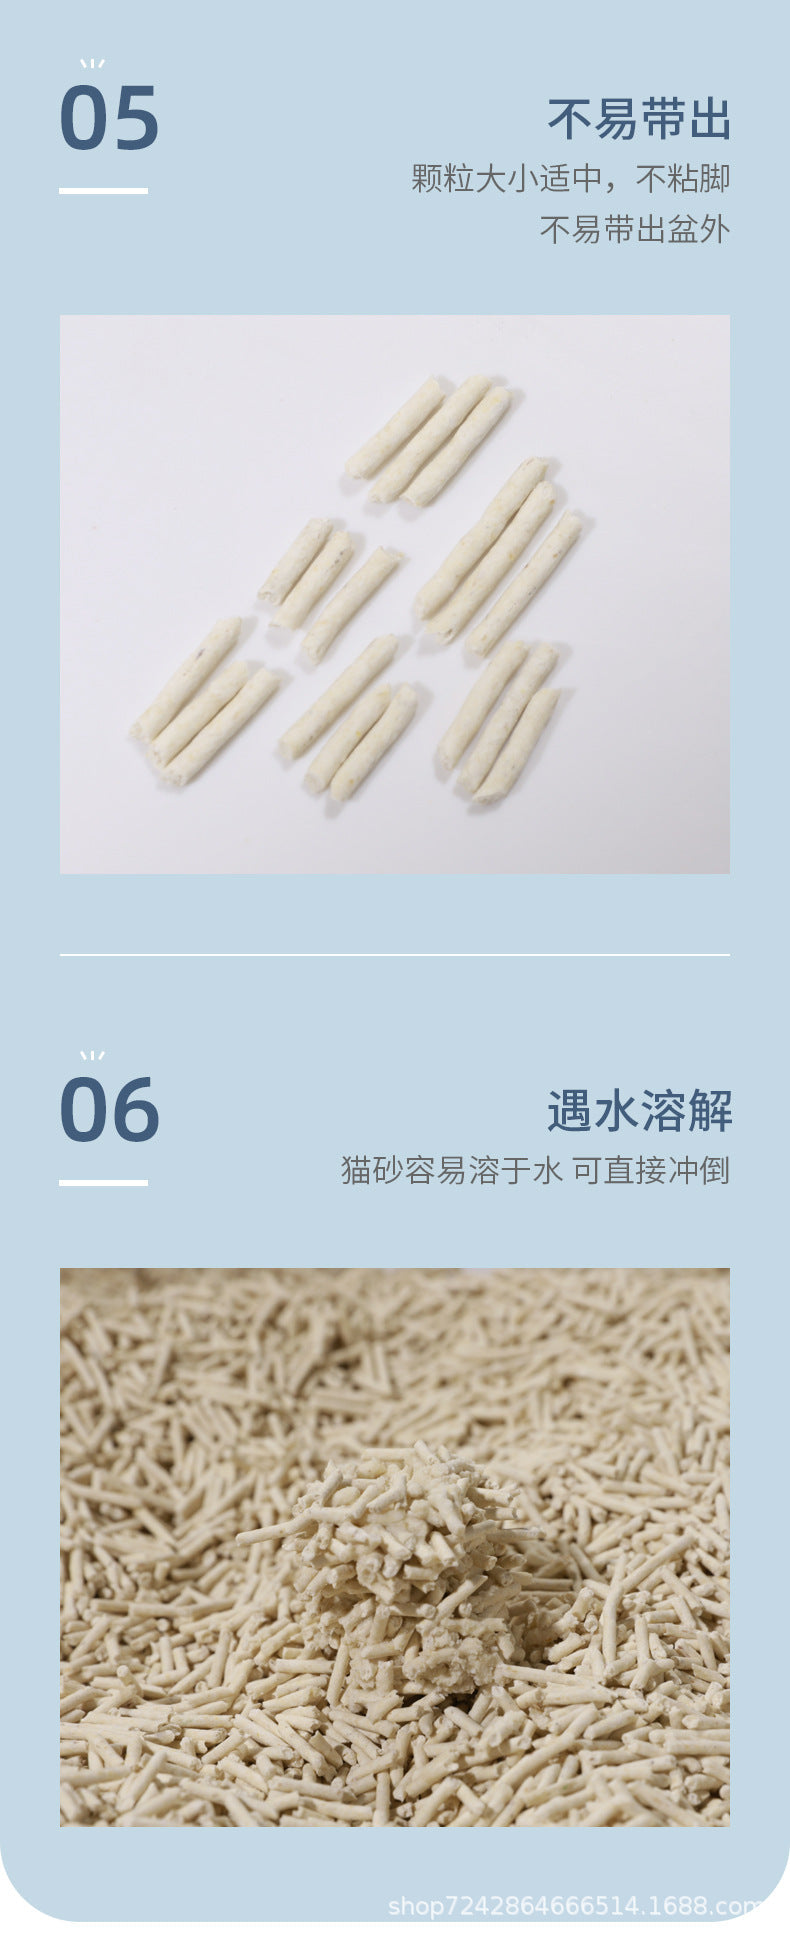 豆腐貓砂原味綠茶活性炭寵物用品 - 綠茶2.5kg